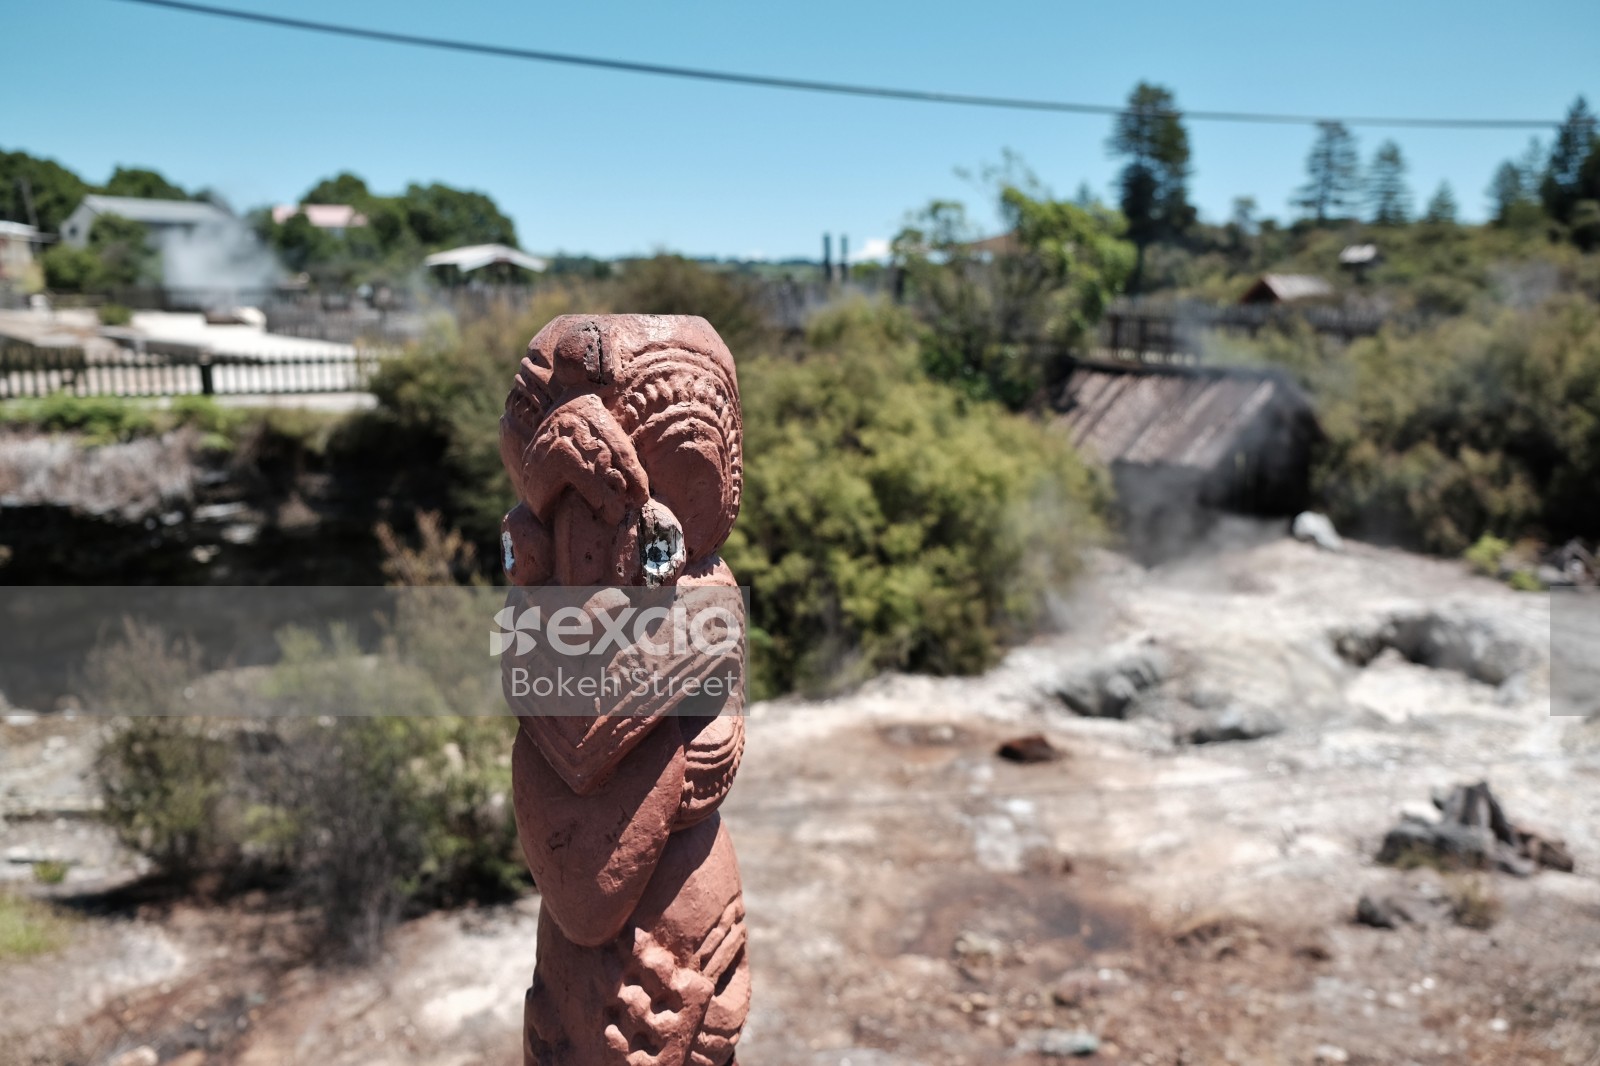 Marae Maori carving sculpture